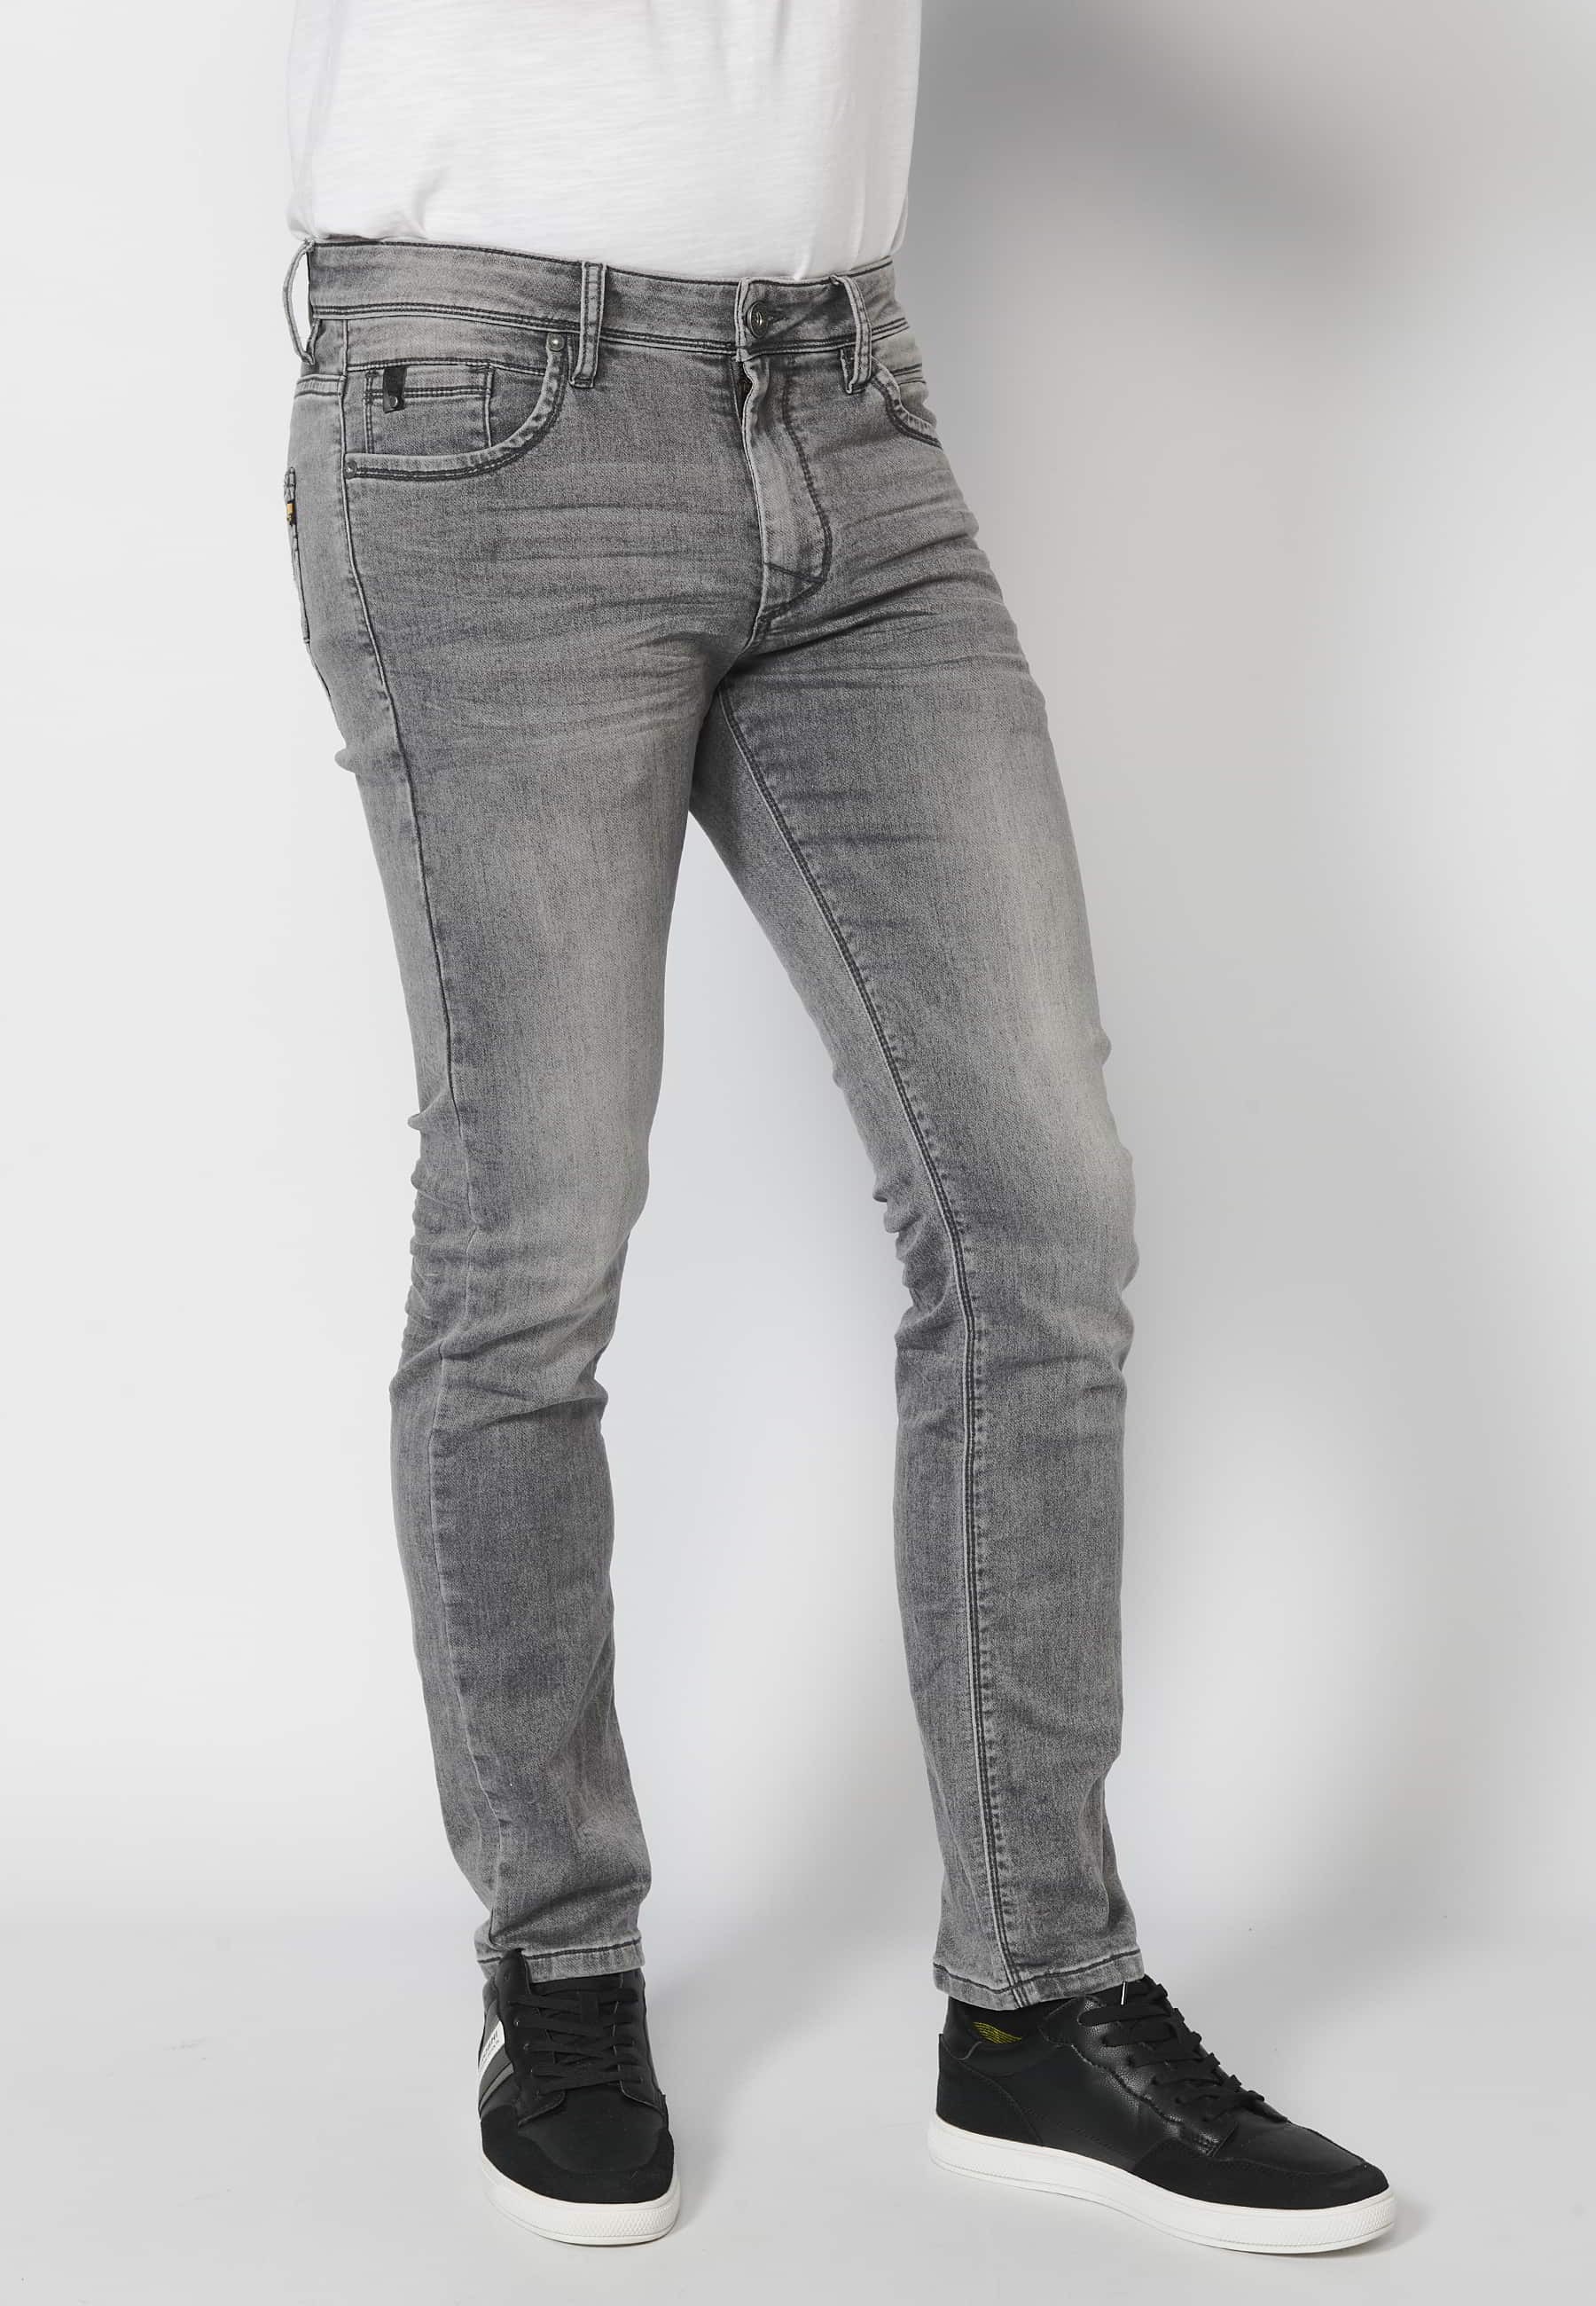 Pantalón largo jeans slim fit con cierre con cremallera y botón cinco bolsillos color denim Gris para Hombre